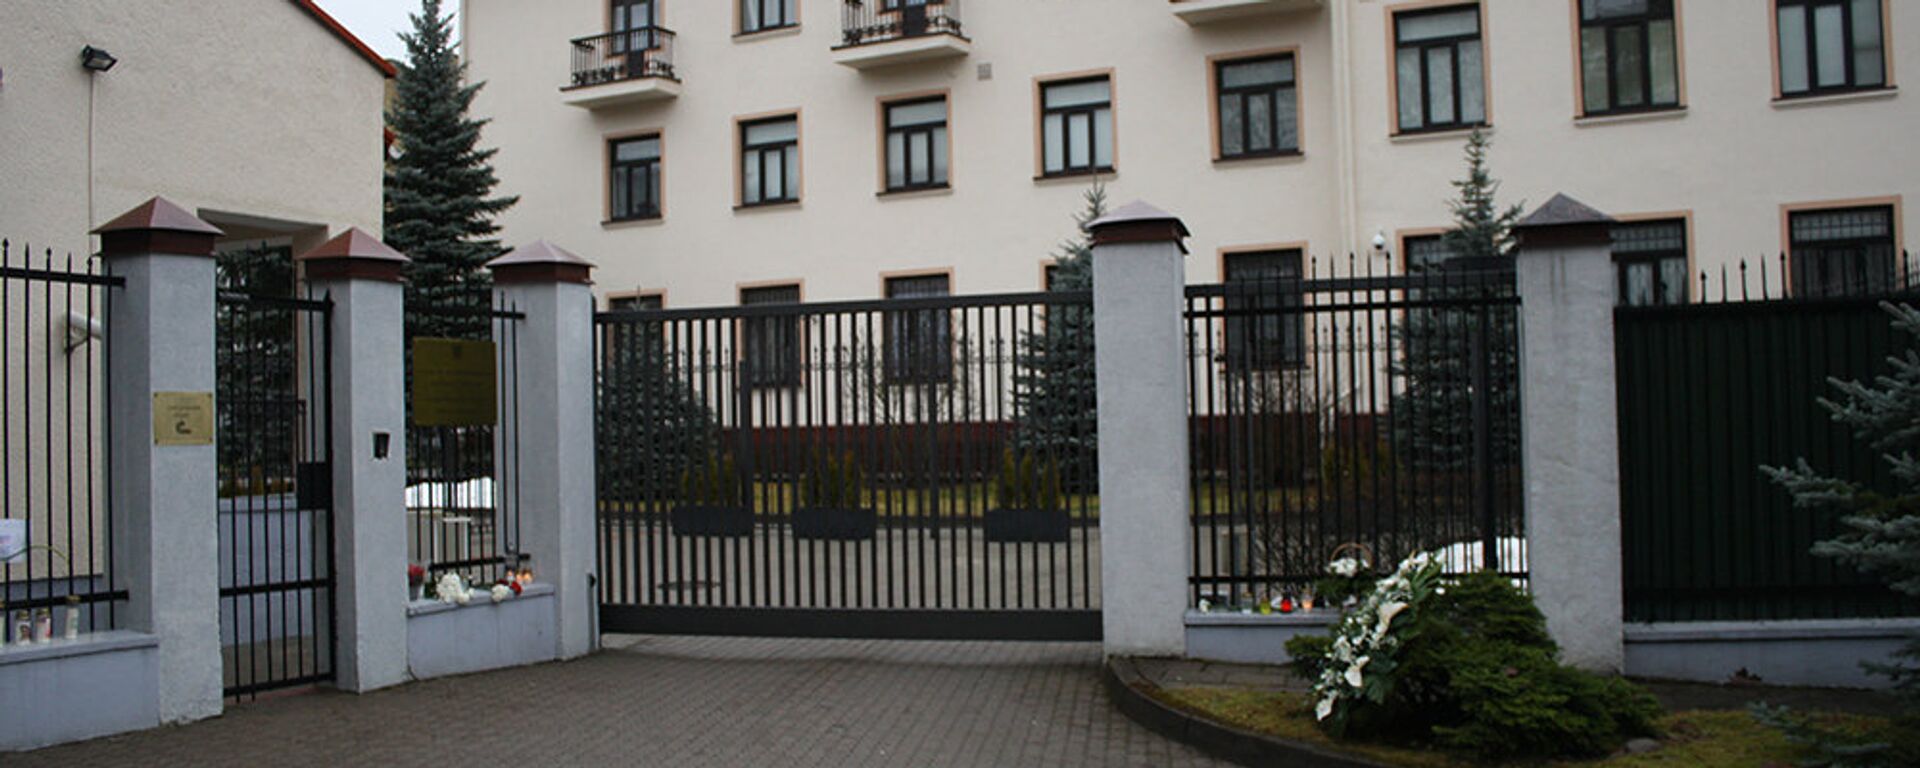 Въезд в посольство России в Литве - Sputnik Литва, 1920, 29.04.2021